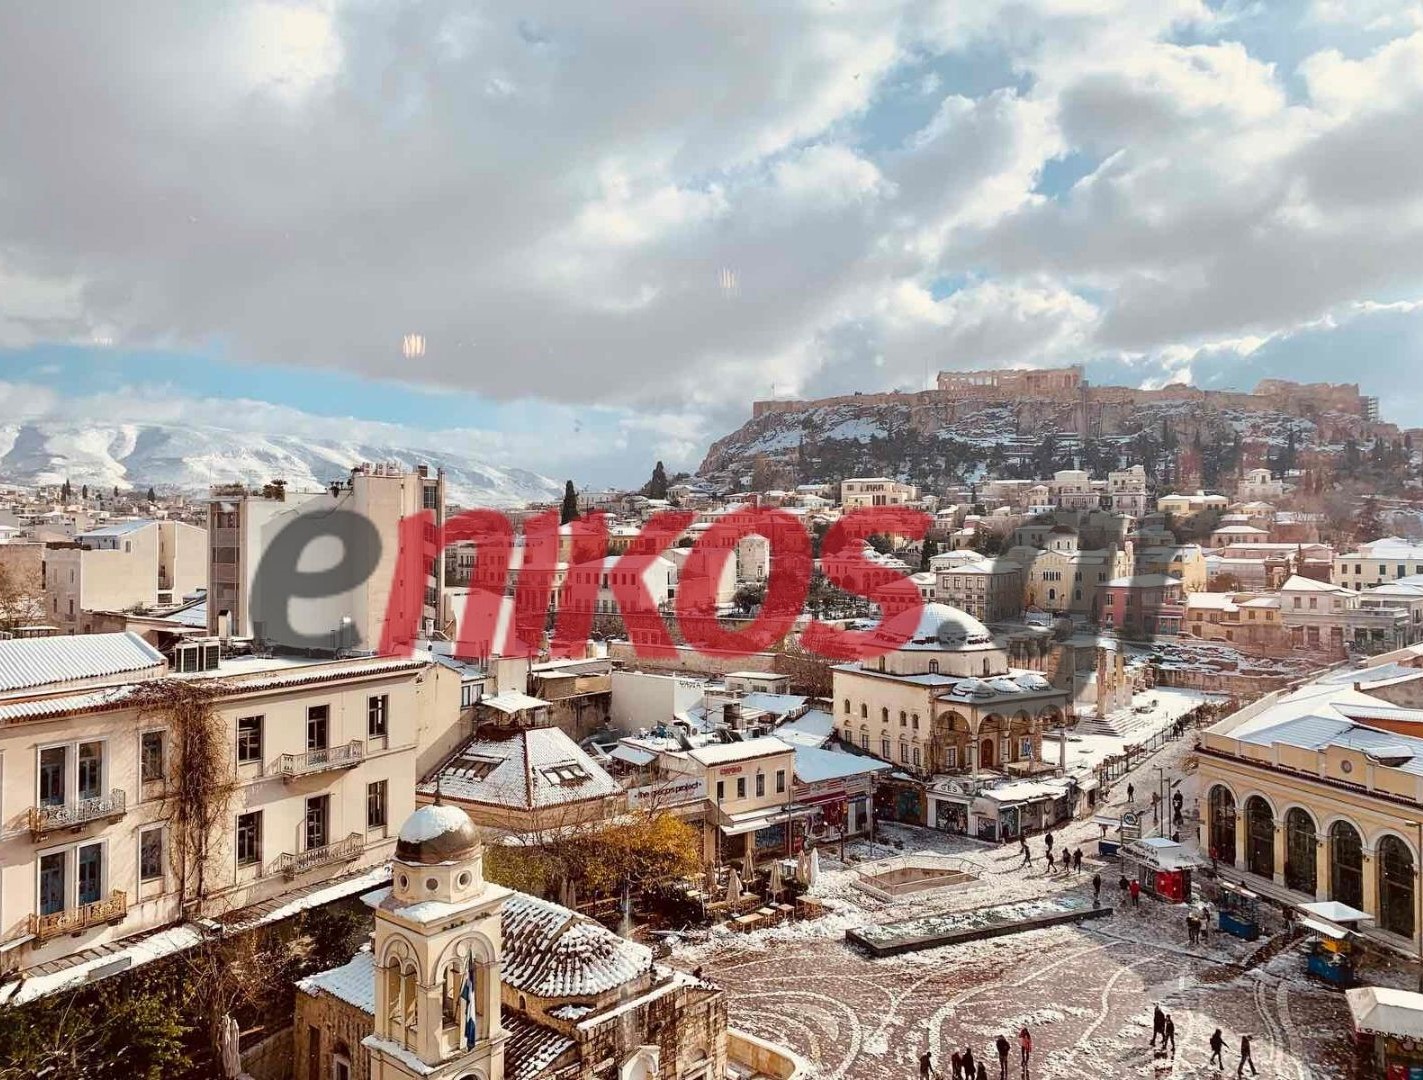 Κακοκαιρία “Ελπίς”: Εντυπωσιακή εικόνα από το χιονισμένο Μοναστηράκι -ΦΩΤΟ αναγνώστη